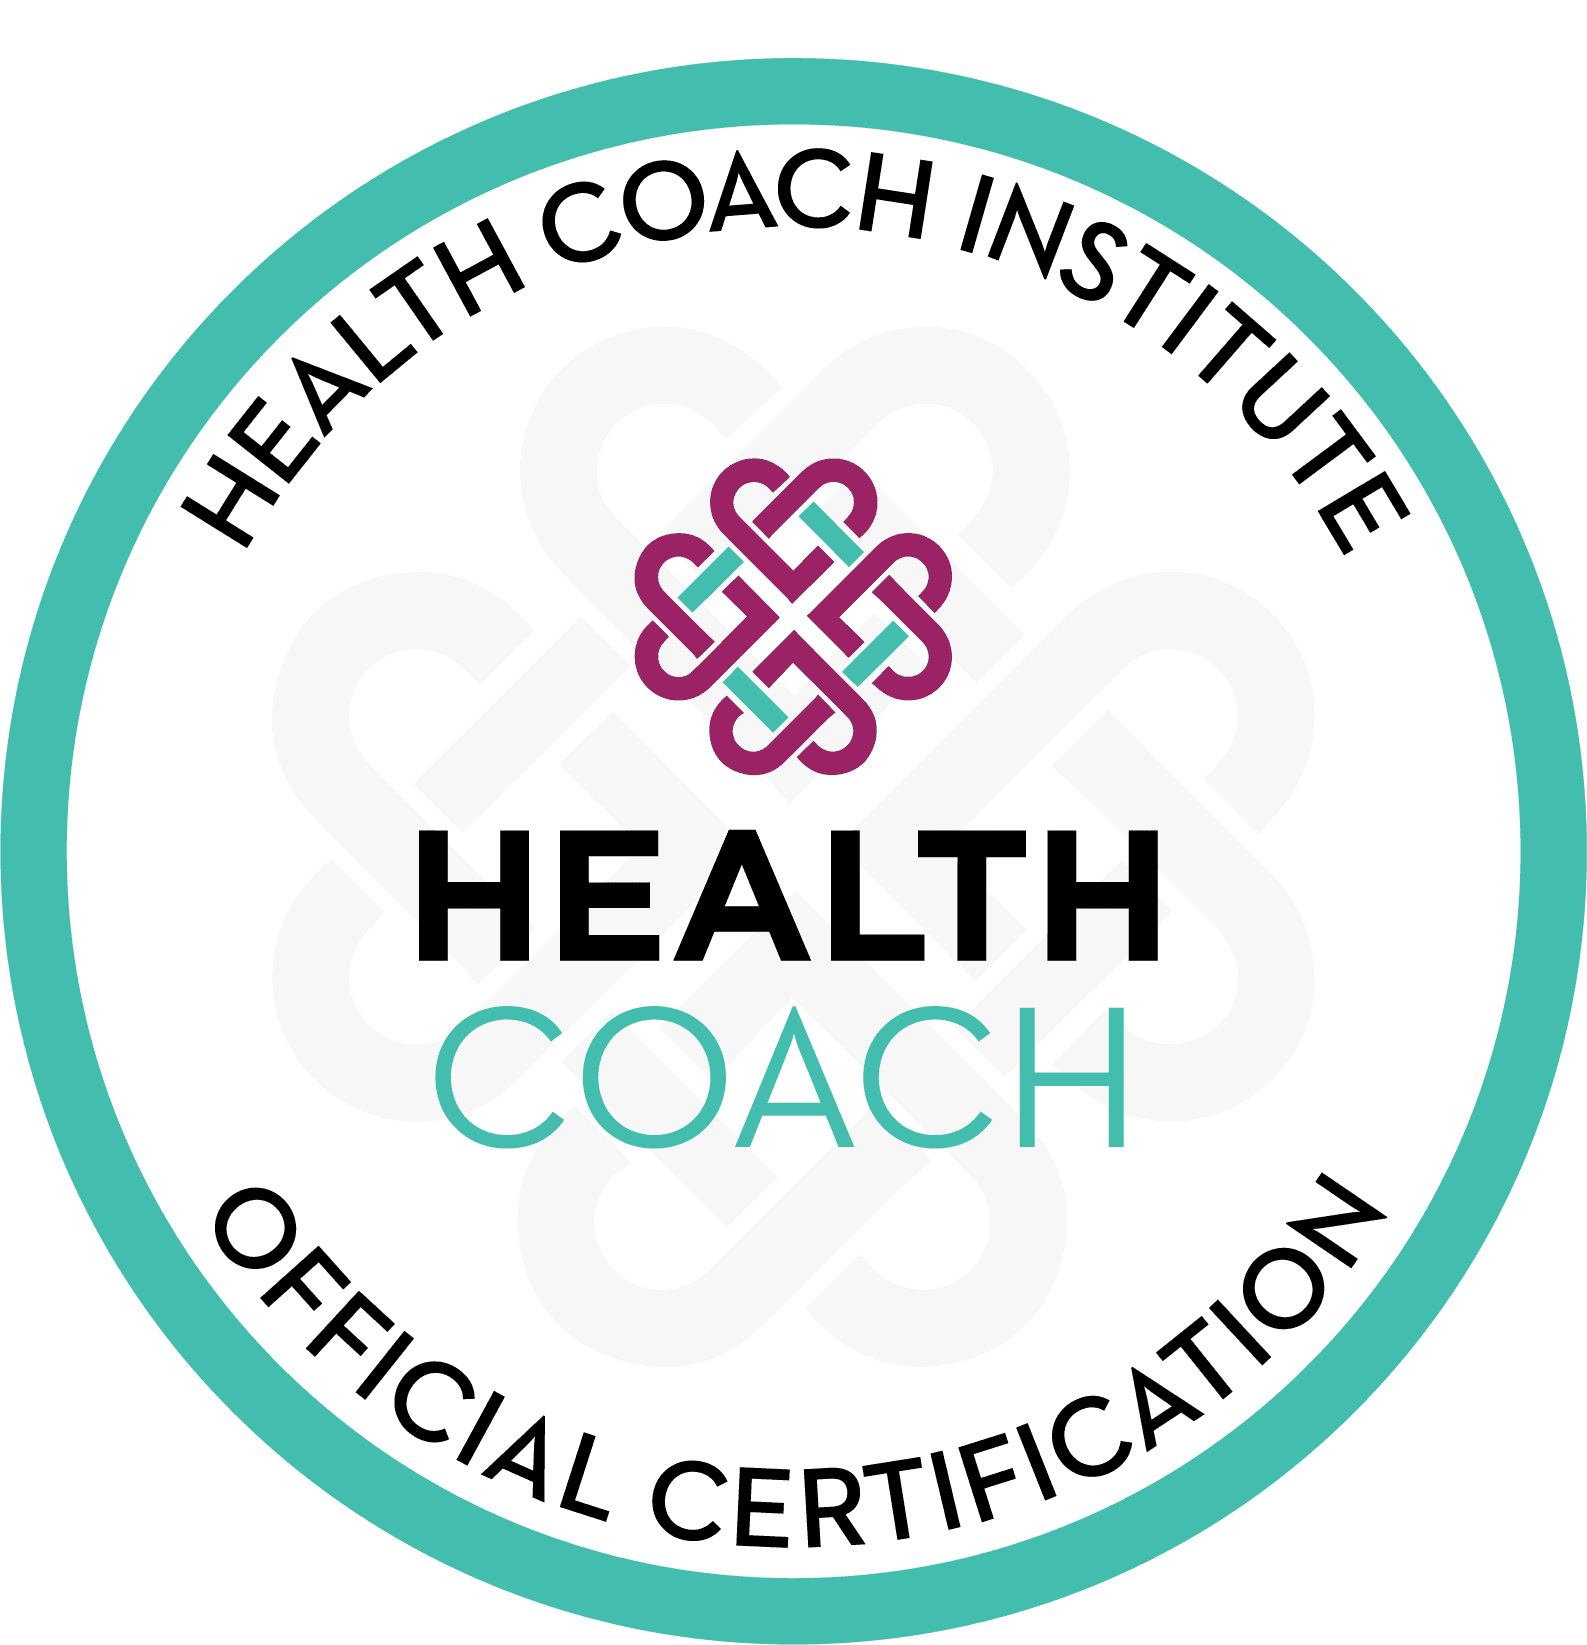 Health Coach Institute - Life & Health Coach